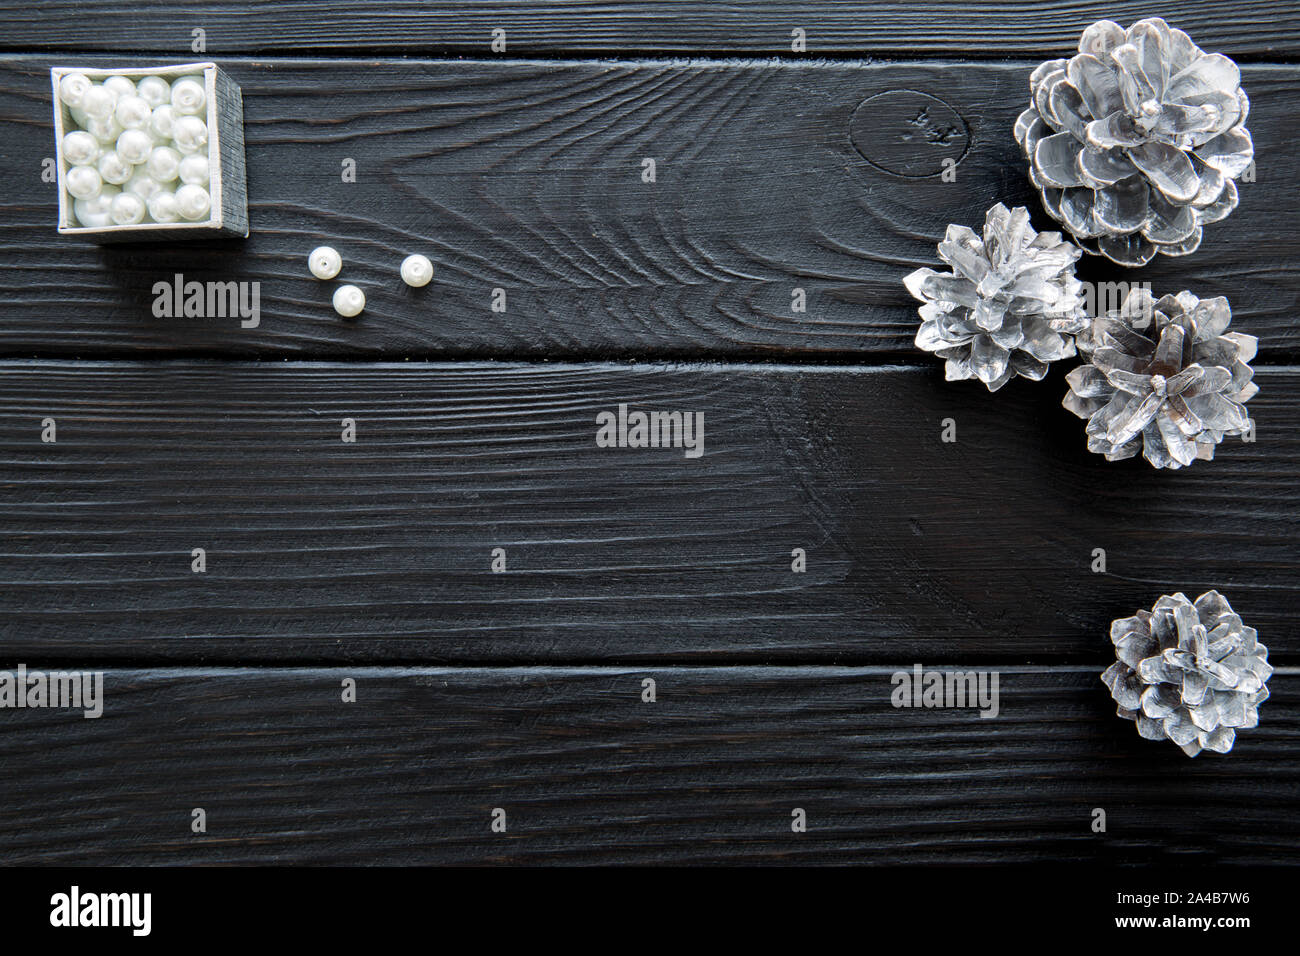 Silberne Tannenzapfen (Tannen Zapfen) und Silber mit weißen glitzernden Perlen auf schwarzen Holztisch Hintergrund. Platz für Text. Freier Speicherplatz für die Begrüßung. Cop Stockfoto